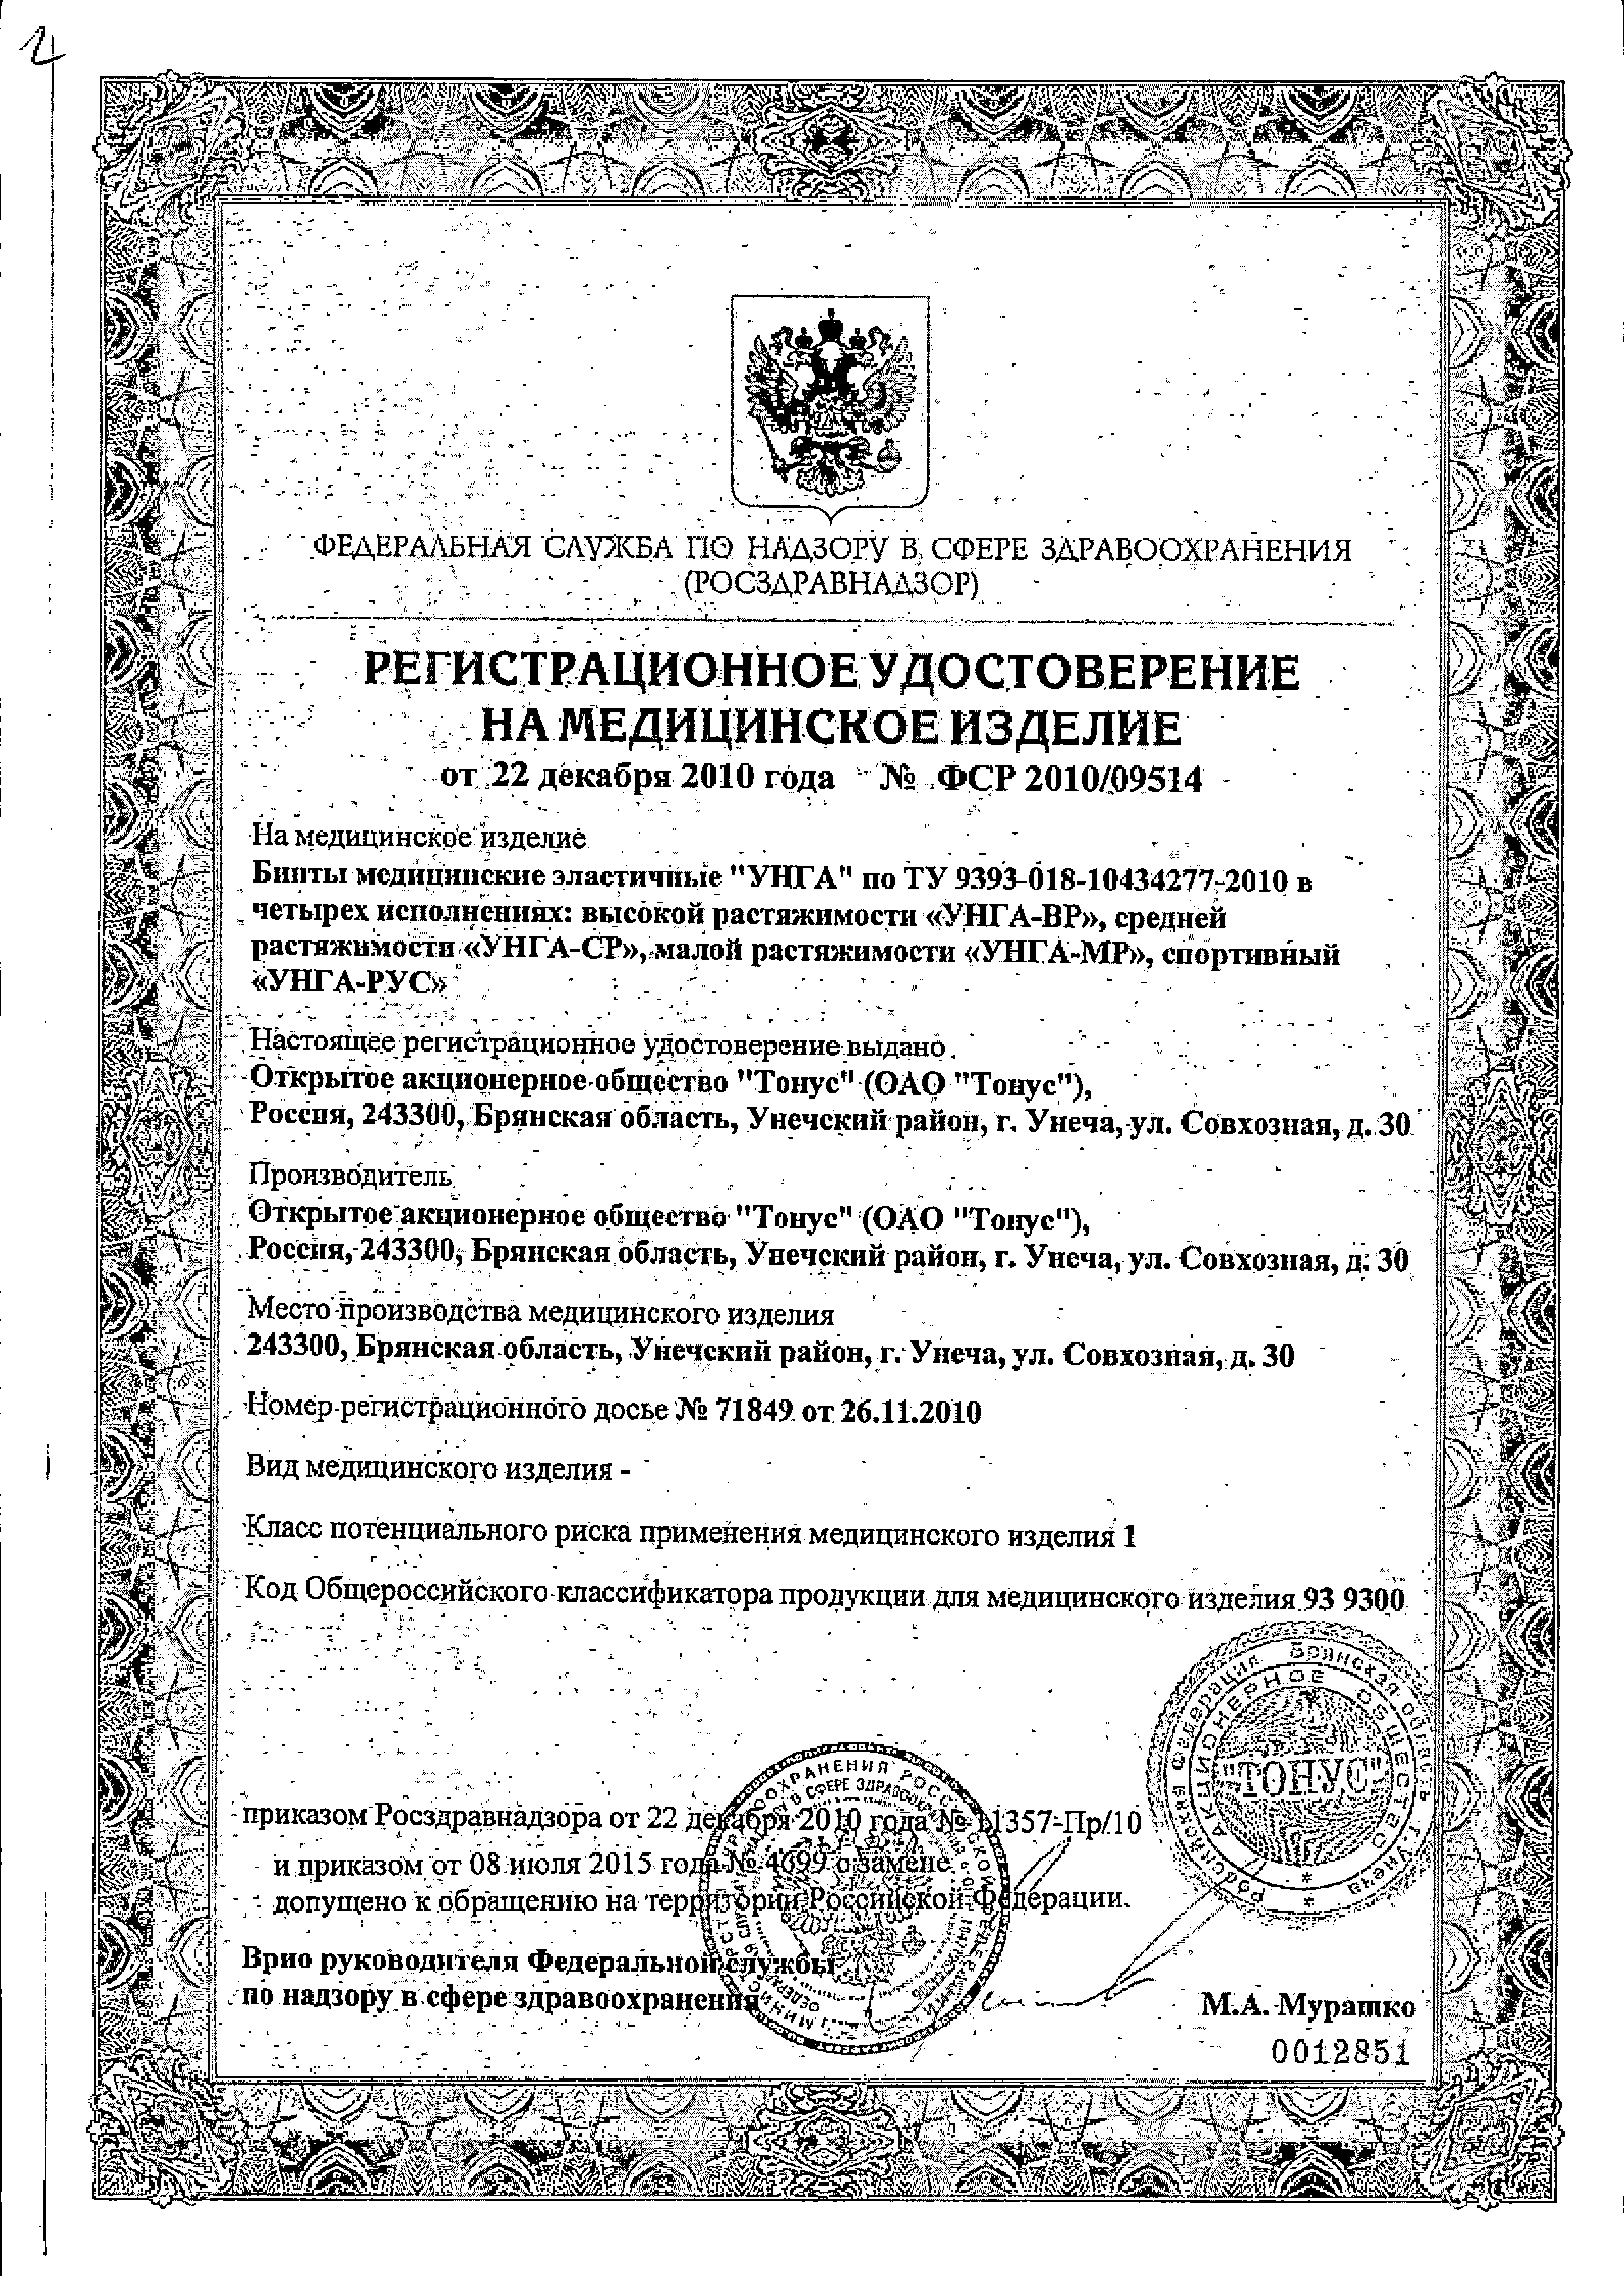 Бинт эластичный медицинский УНГА-СР сертификат